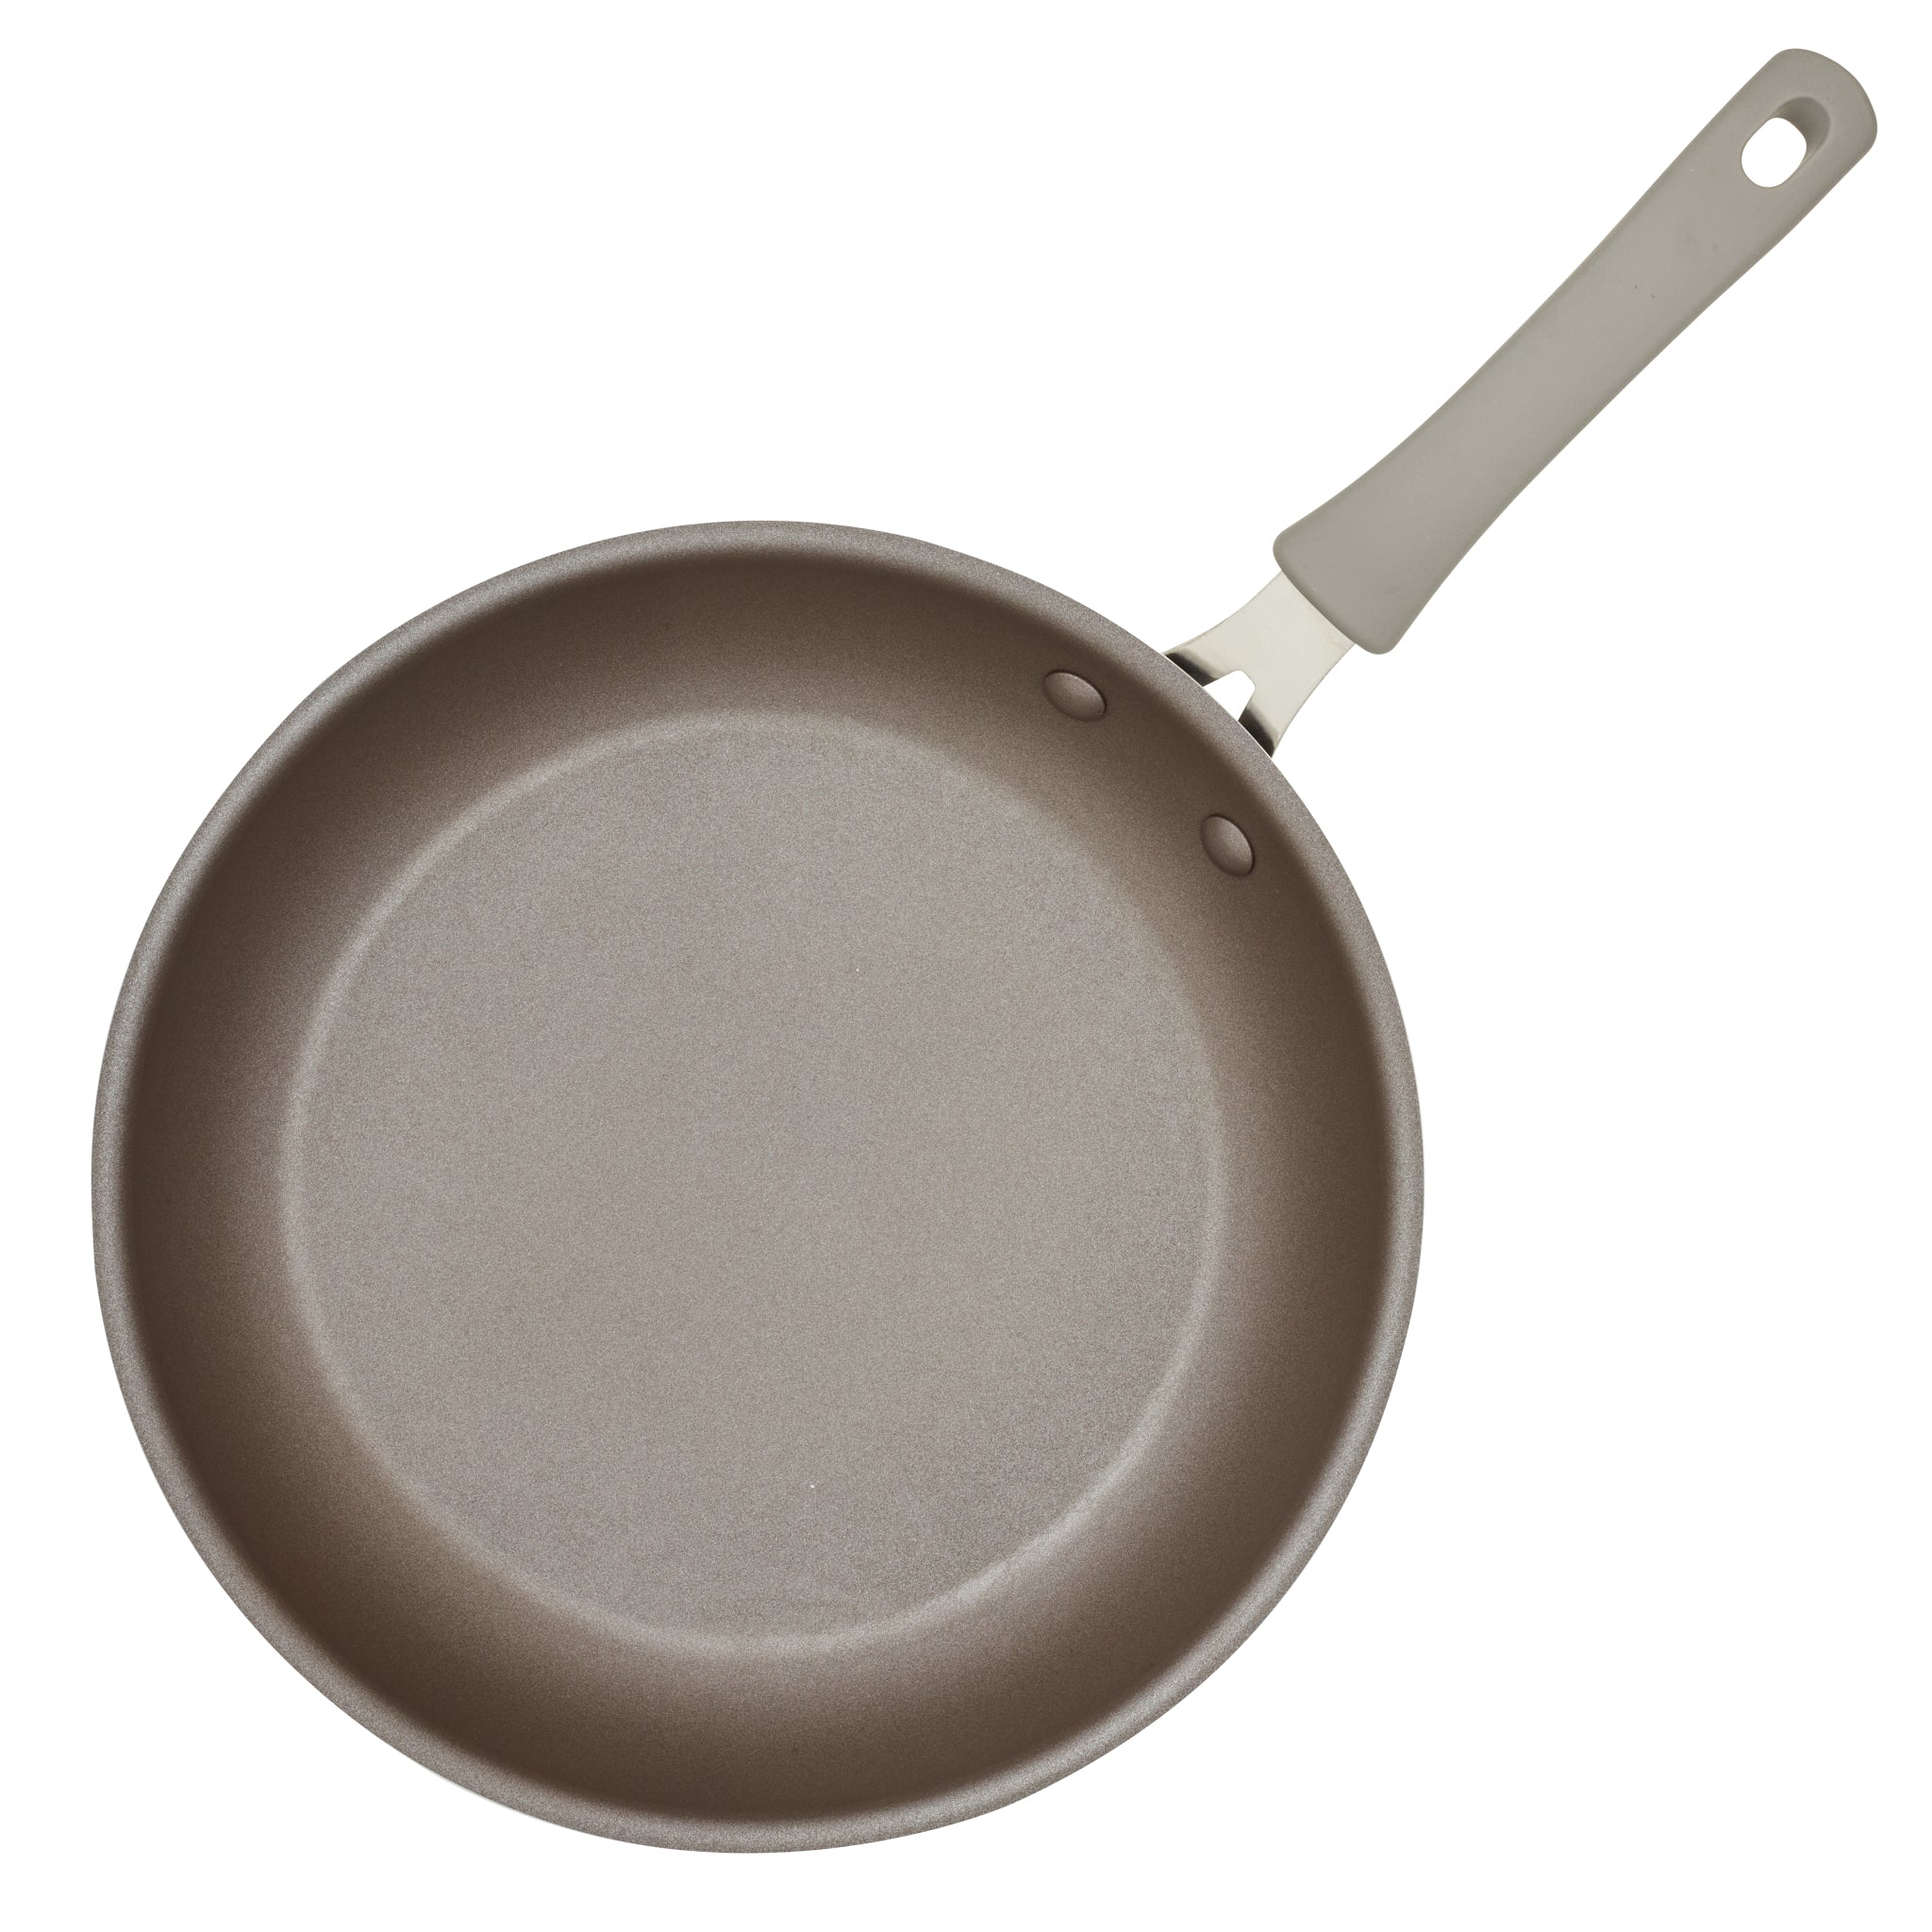 Cook + Create 2-Piece Nonstick Frying Pan Set